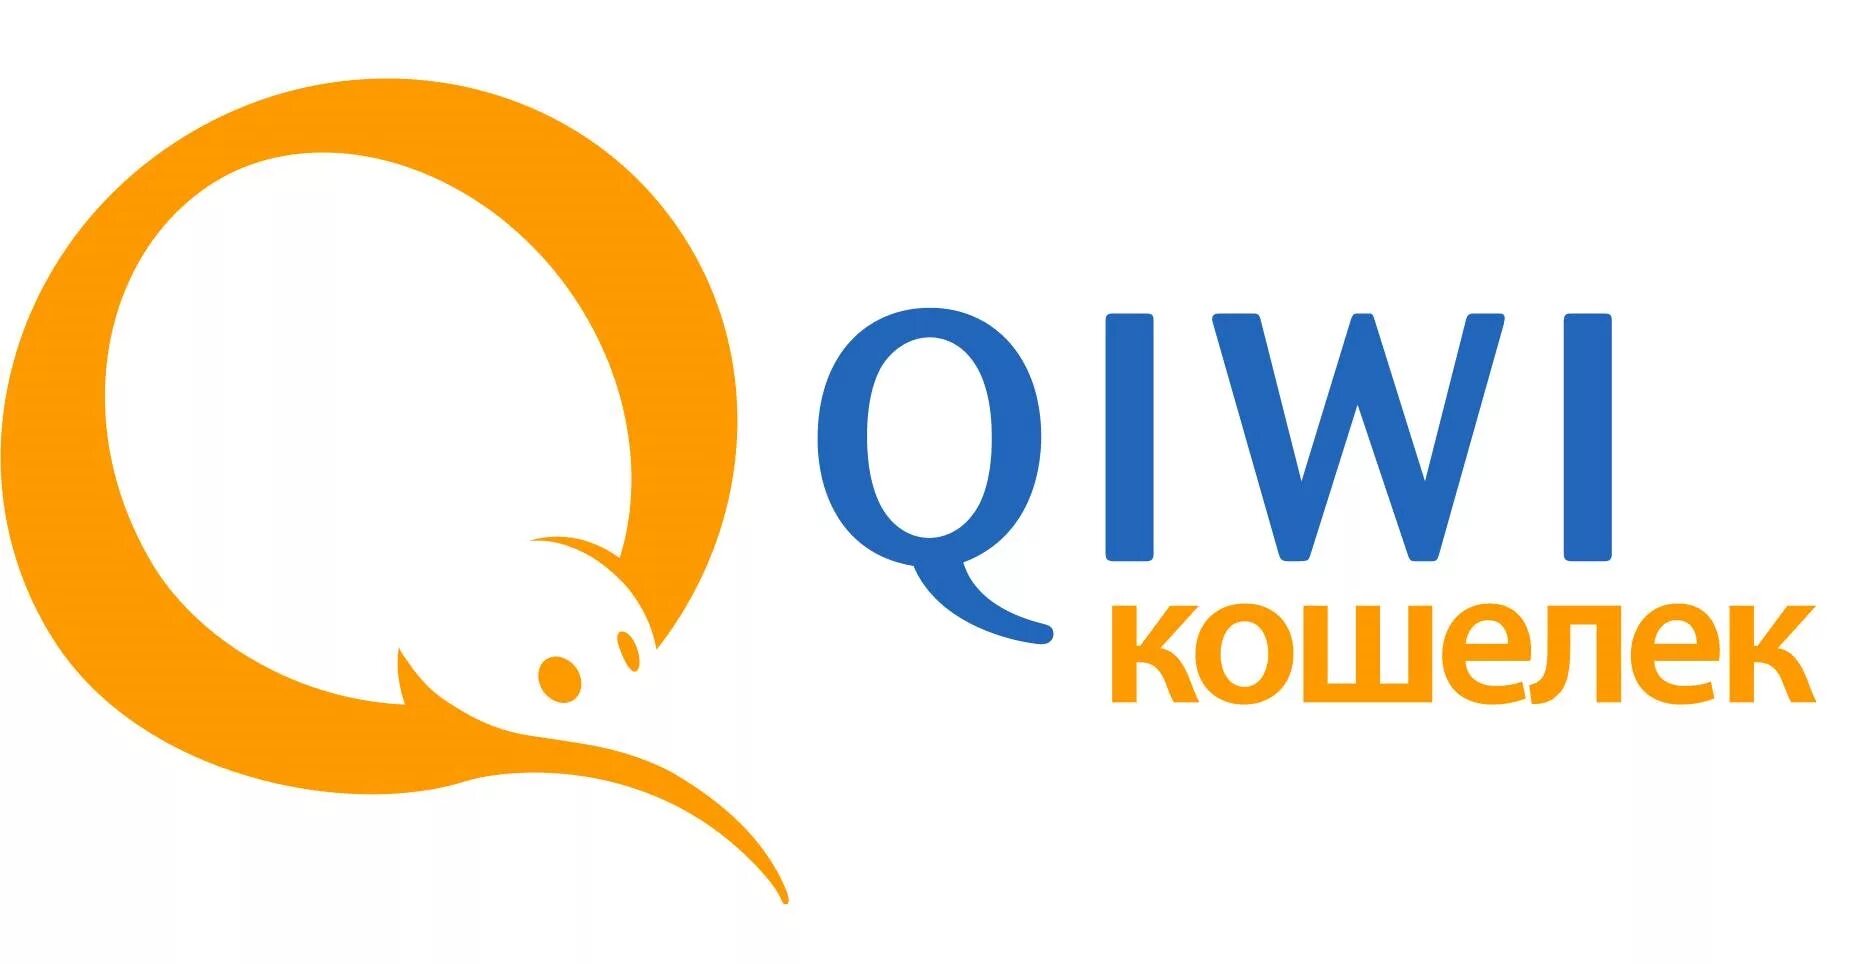 Киви кошелек. QIWI логотип. Картинки QIWI кошелек. Иконка киви кошелька.